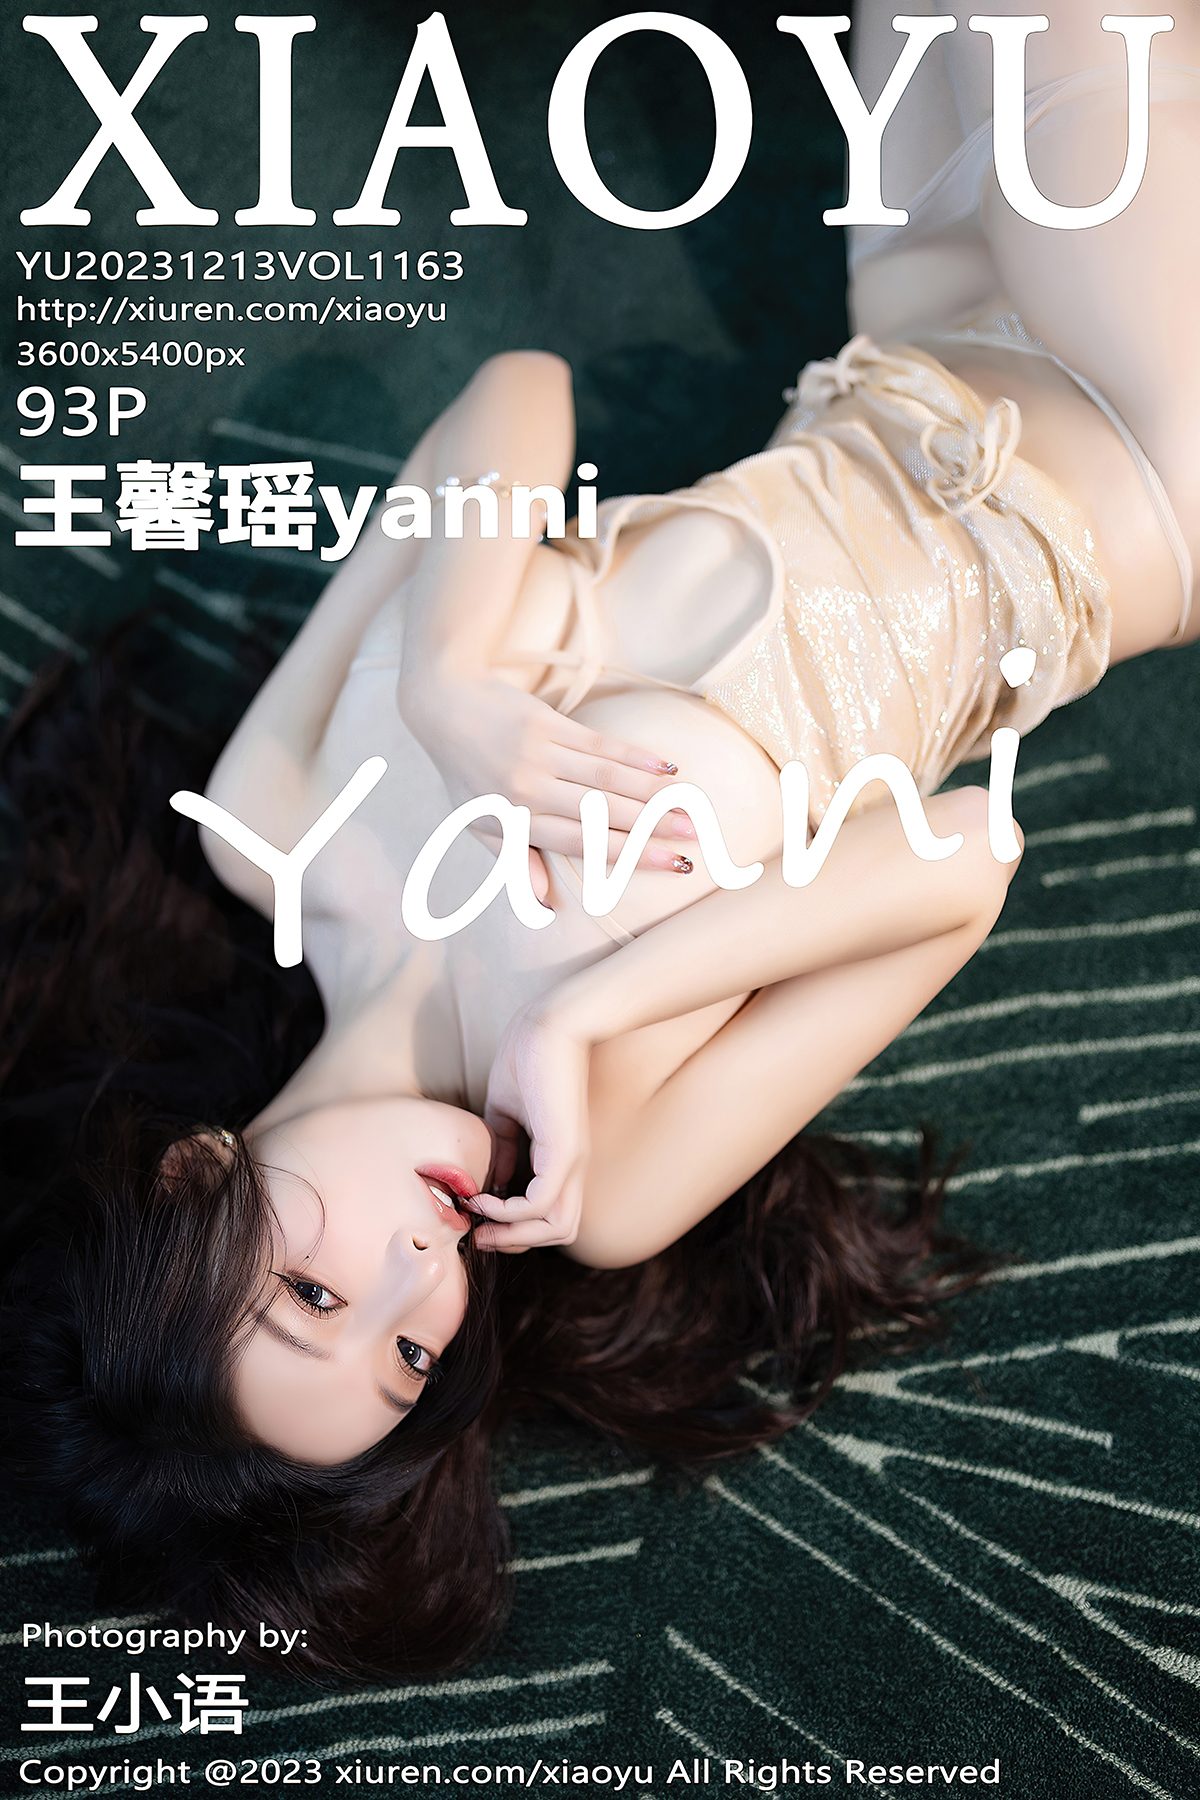 XiaoYu语画界 Vol 1163 Wang Xin Yao Yanni 0010 6403923056.jpg